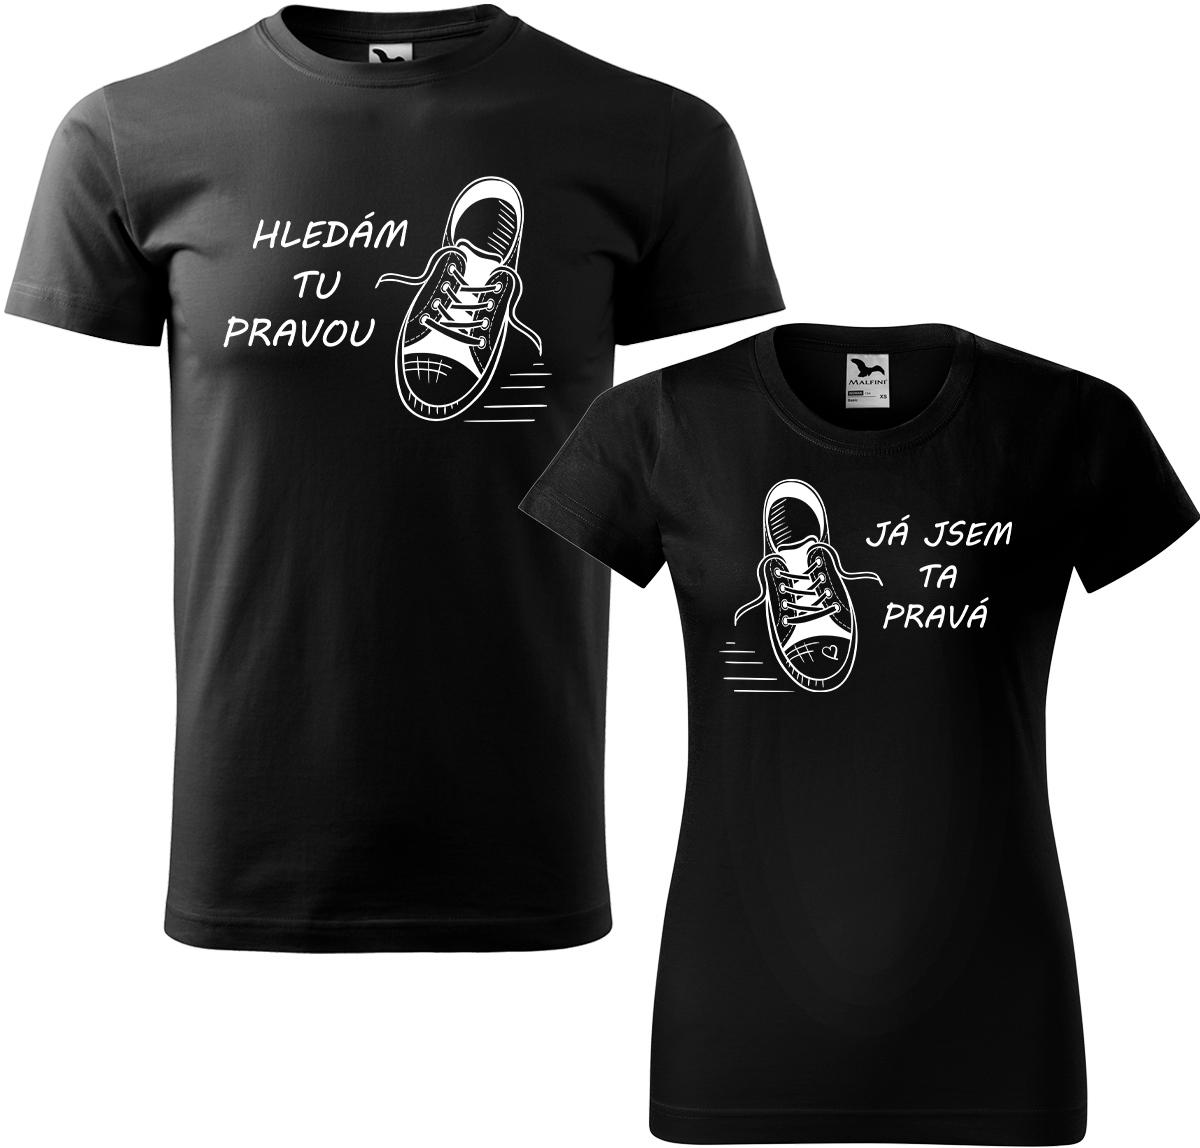 Trička pro páry - Kecky Barva: Černá (01), Velikost dámské tričko: S, Velikost pánské tričko: XL